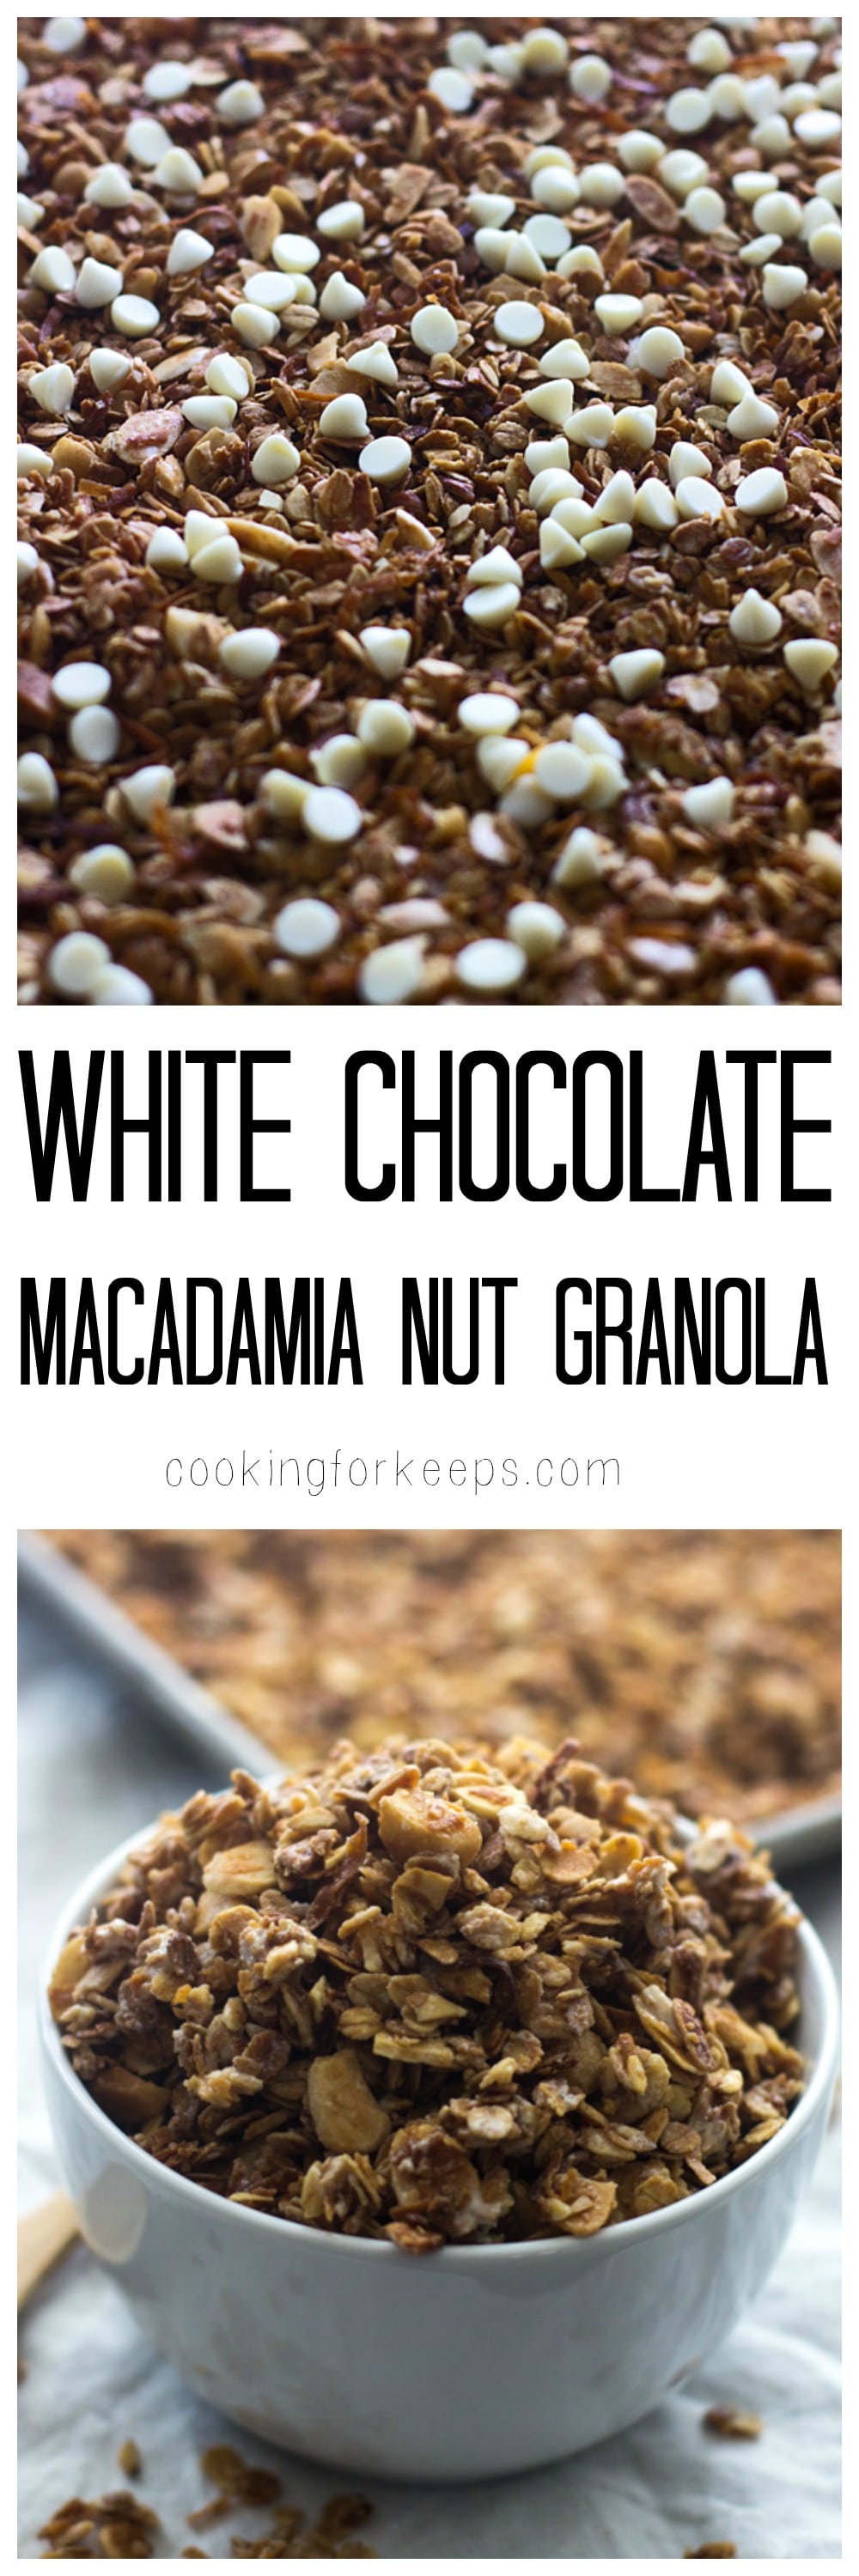 White Chocolate Macadamia Nut Granola - Tastes EXACTLY like a white chocolate macadamia nut cookie! 